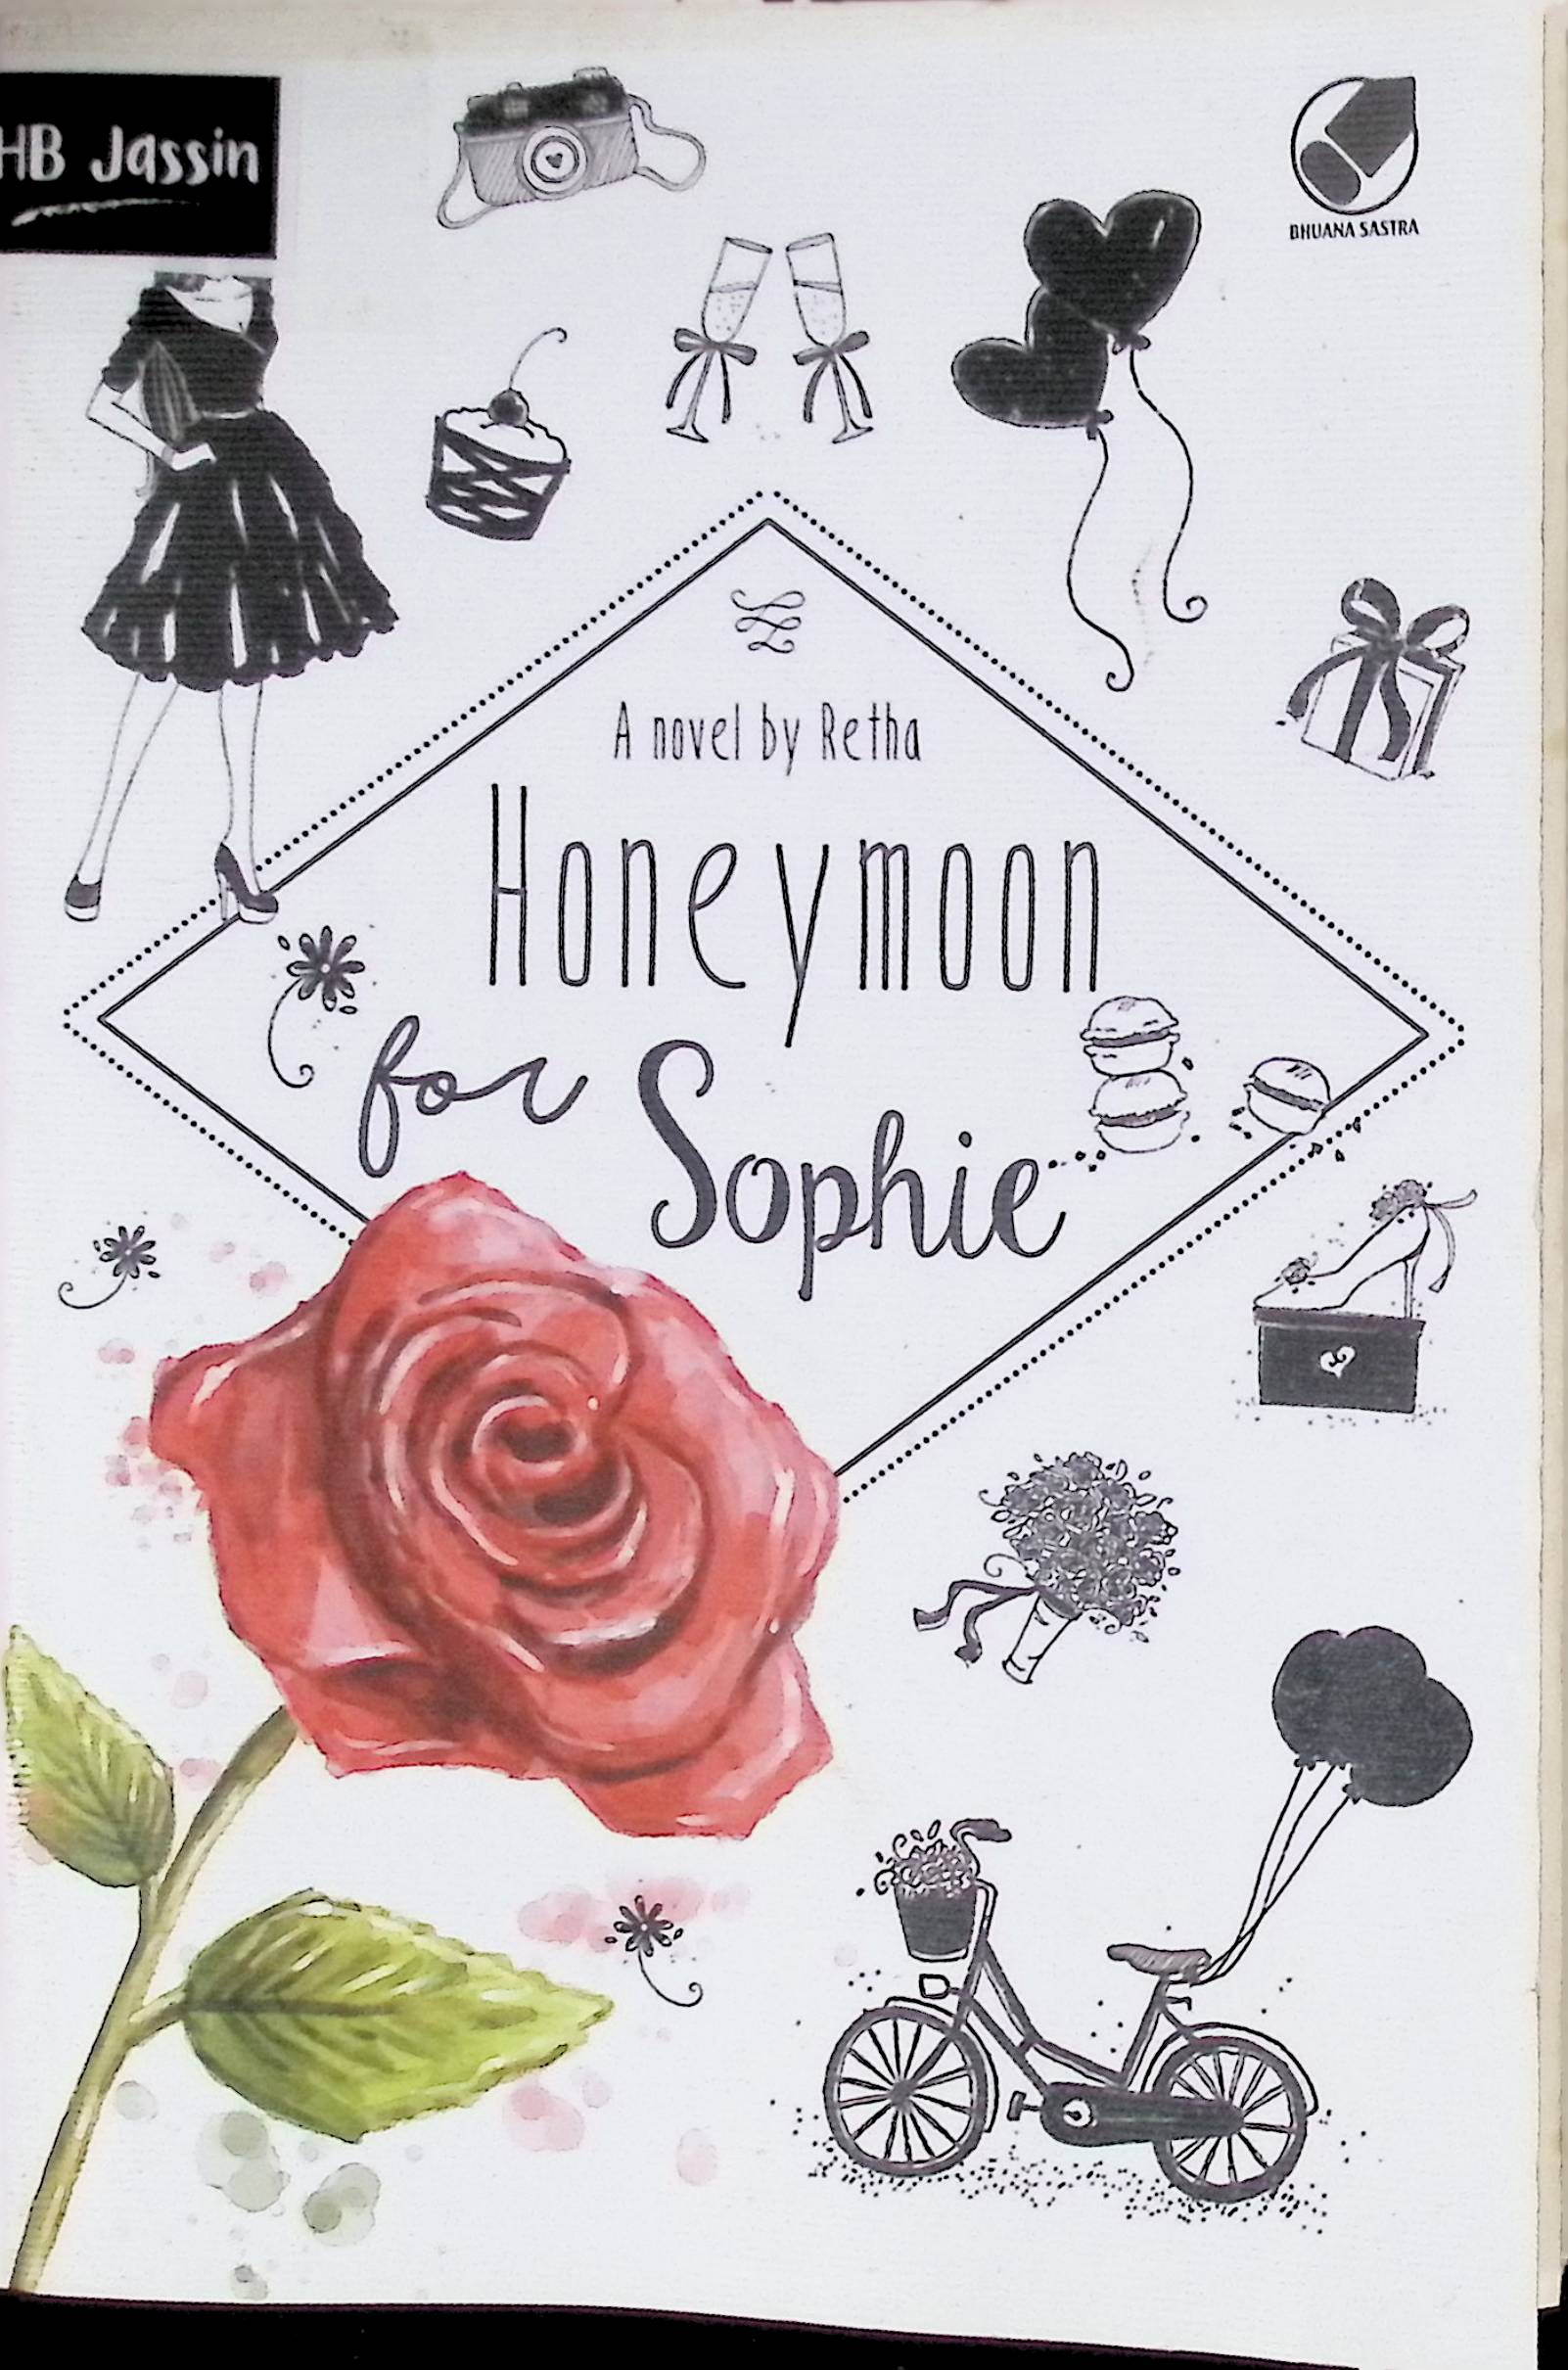 Honeymoon for Sophie